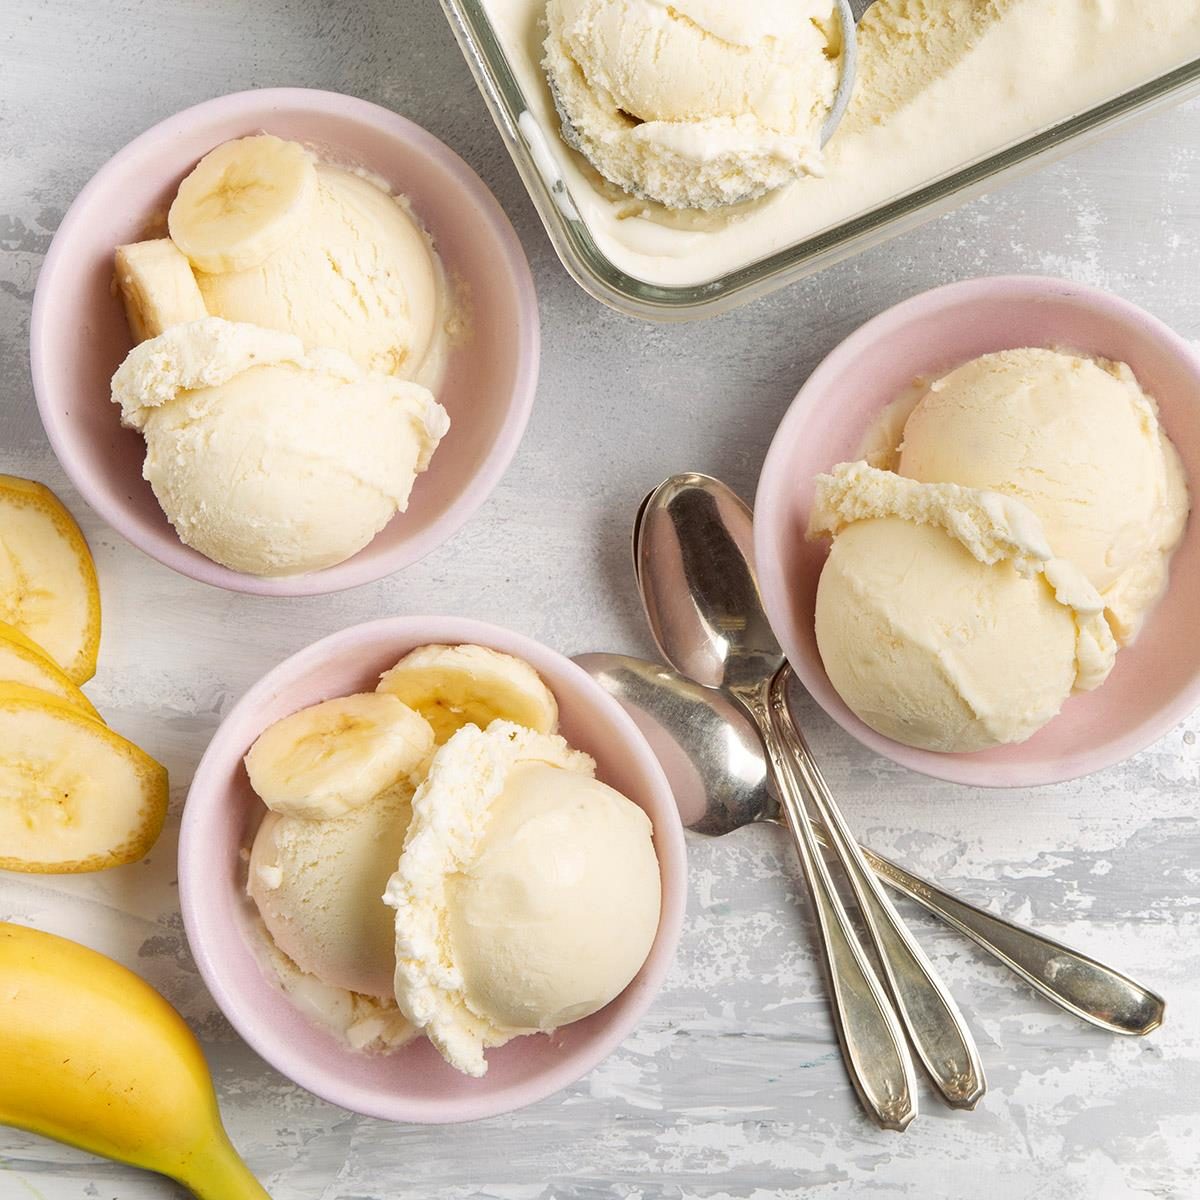 https://www.tasteofhome.com/wp-content/uploads/2018/01/Best-Banana-Ice-Cream_EXPS_FT21_38405_F_0506_1.jpg?fit=700%2C1024